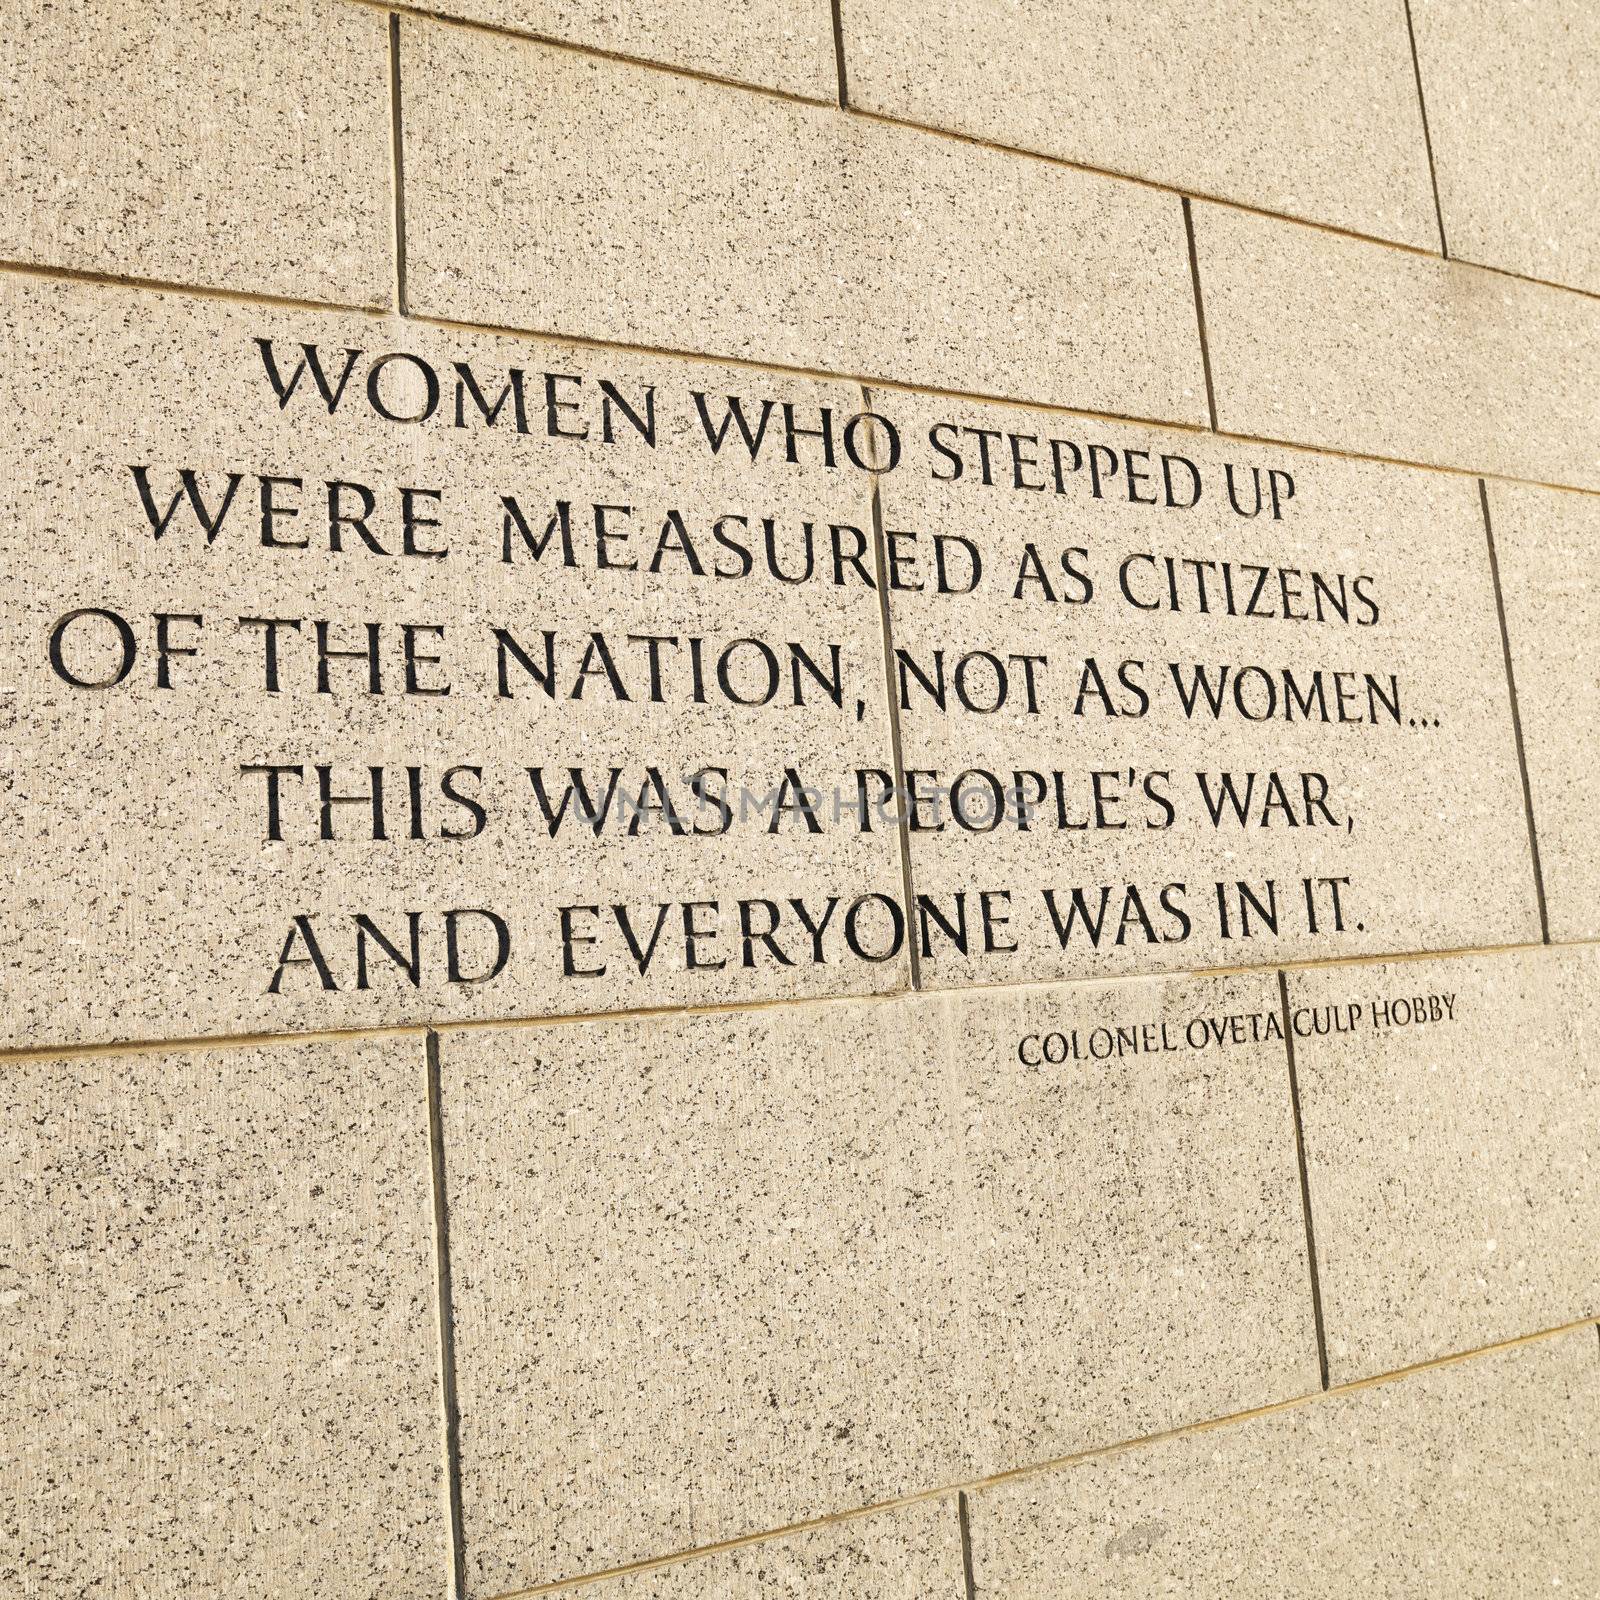 World War II Memorial in Washington, DC, USA.